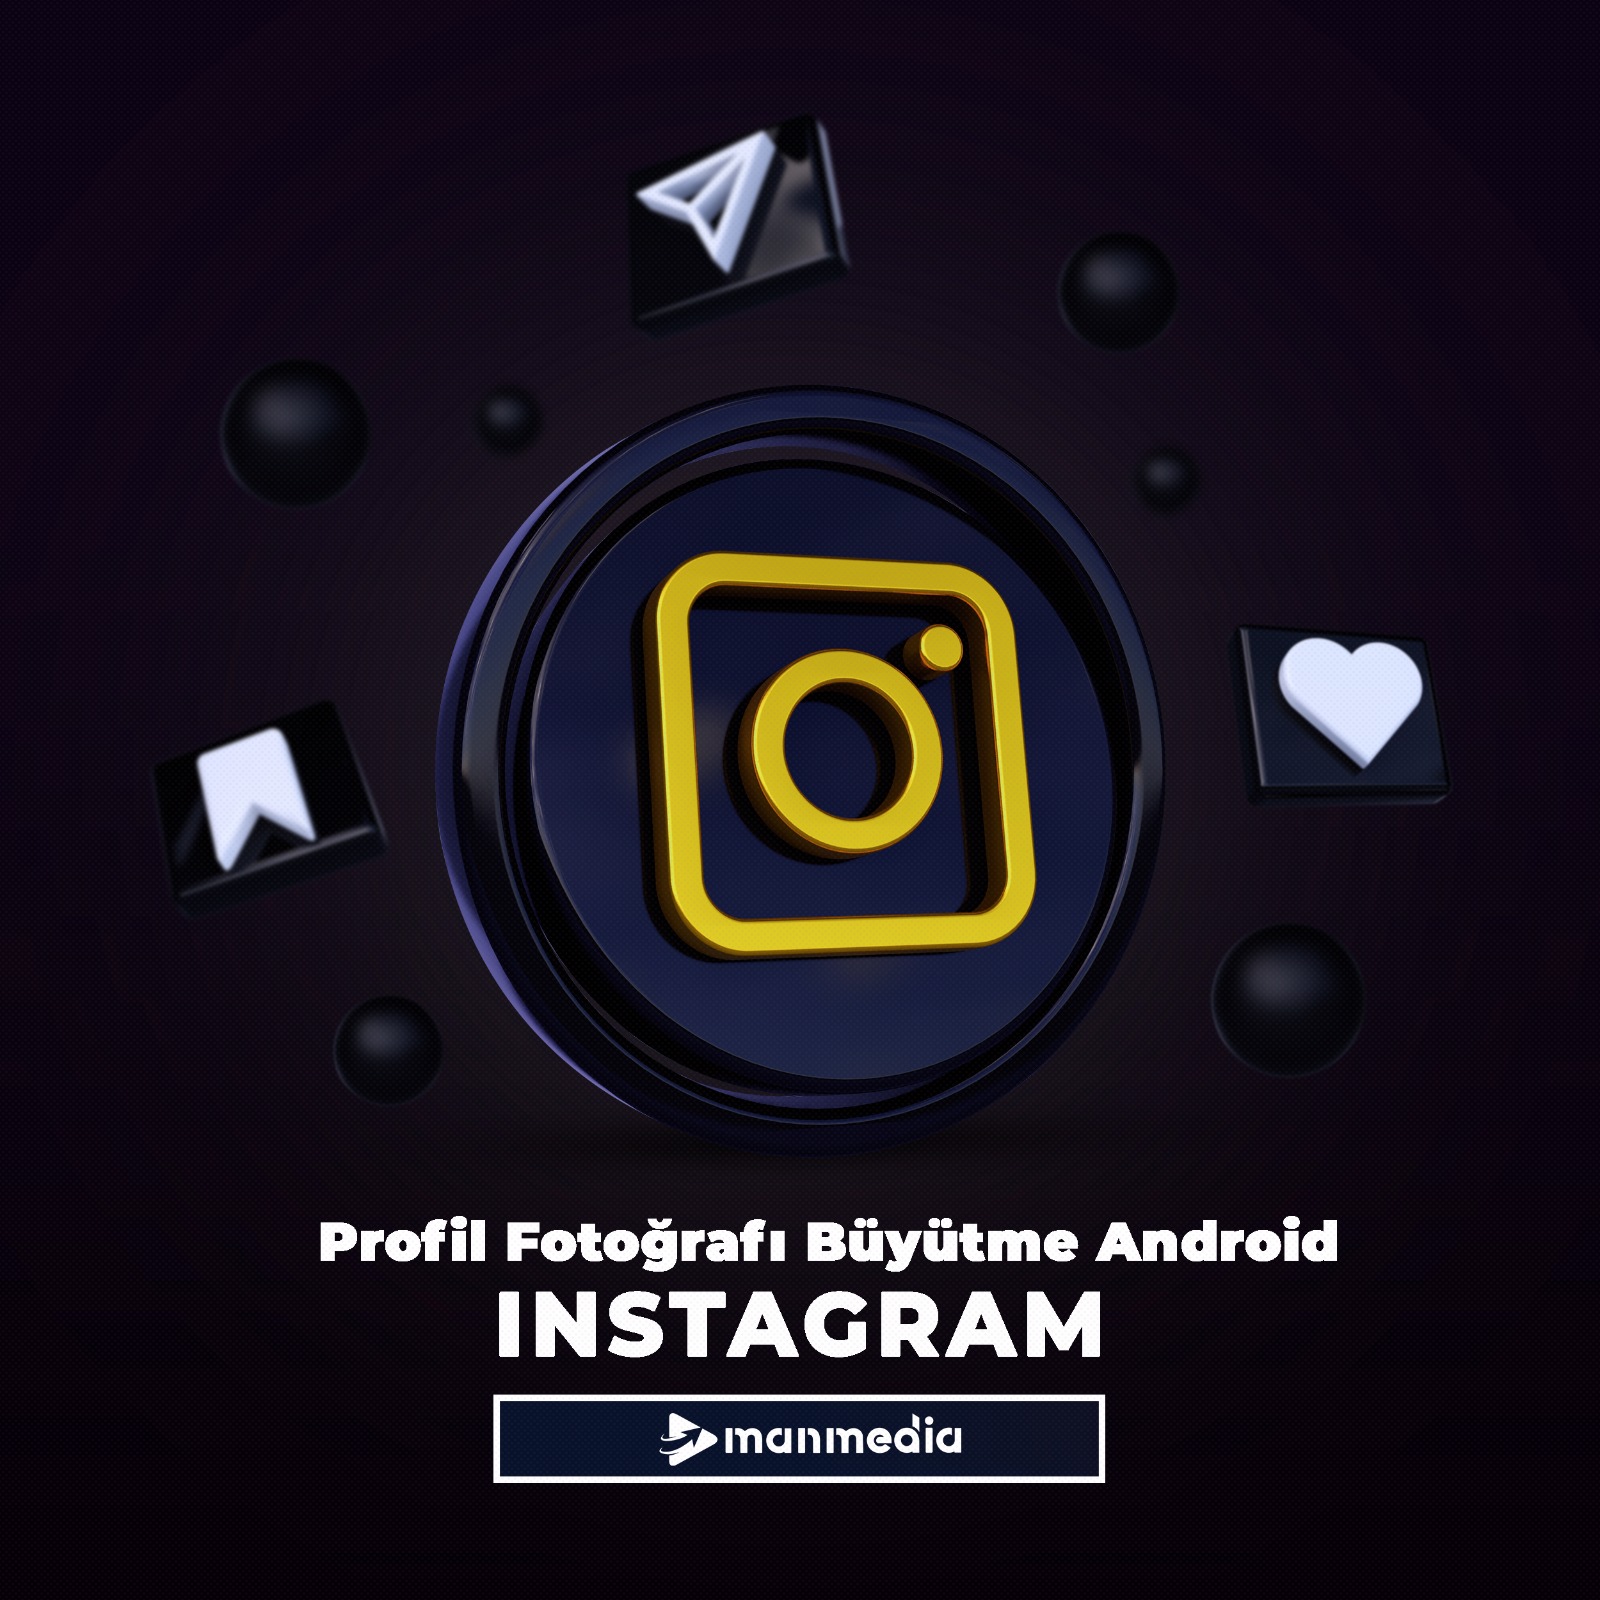 Instagram profil fotoğrafı büyütme Android